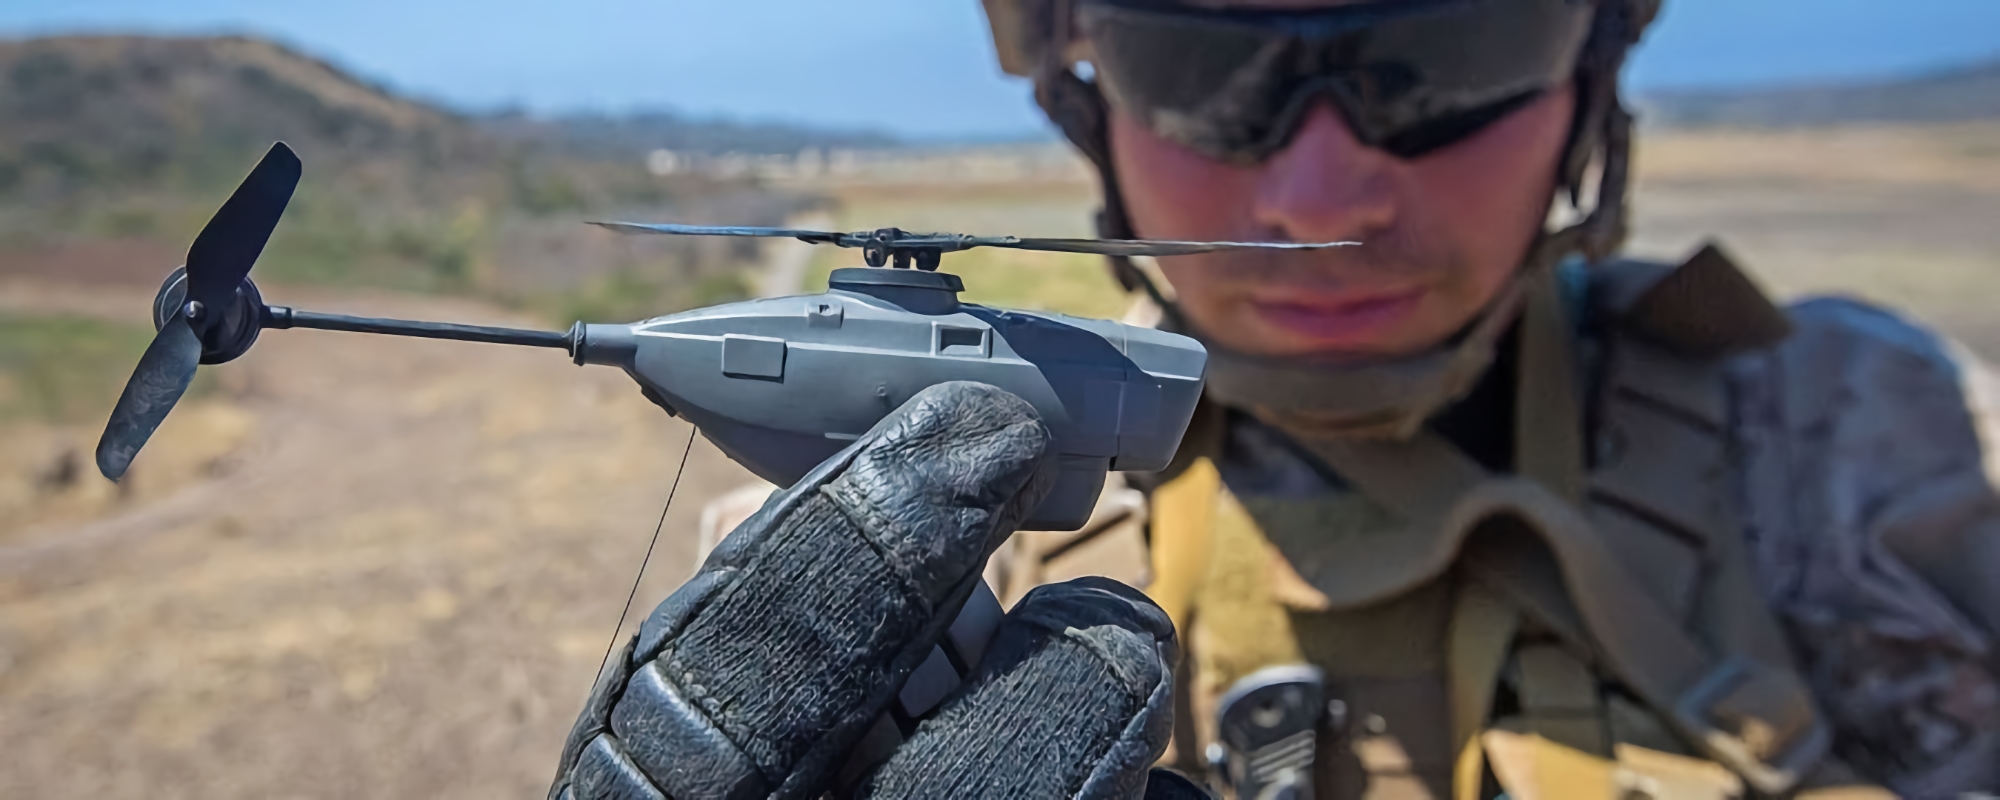 L'AFU sta già utilizzando i microdroni Black Hornet Nano, che stanno in una mano e sono progettati per la guerra urbana.